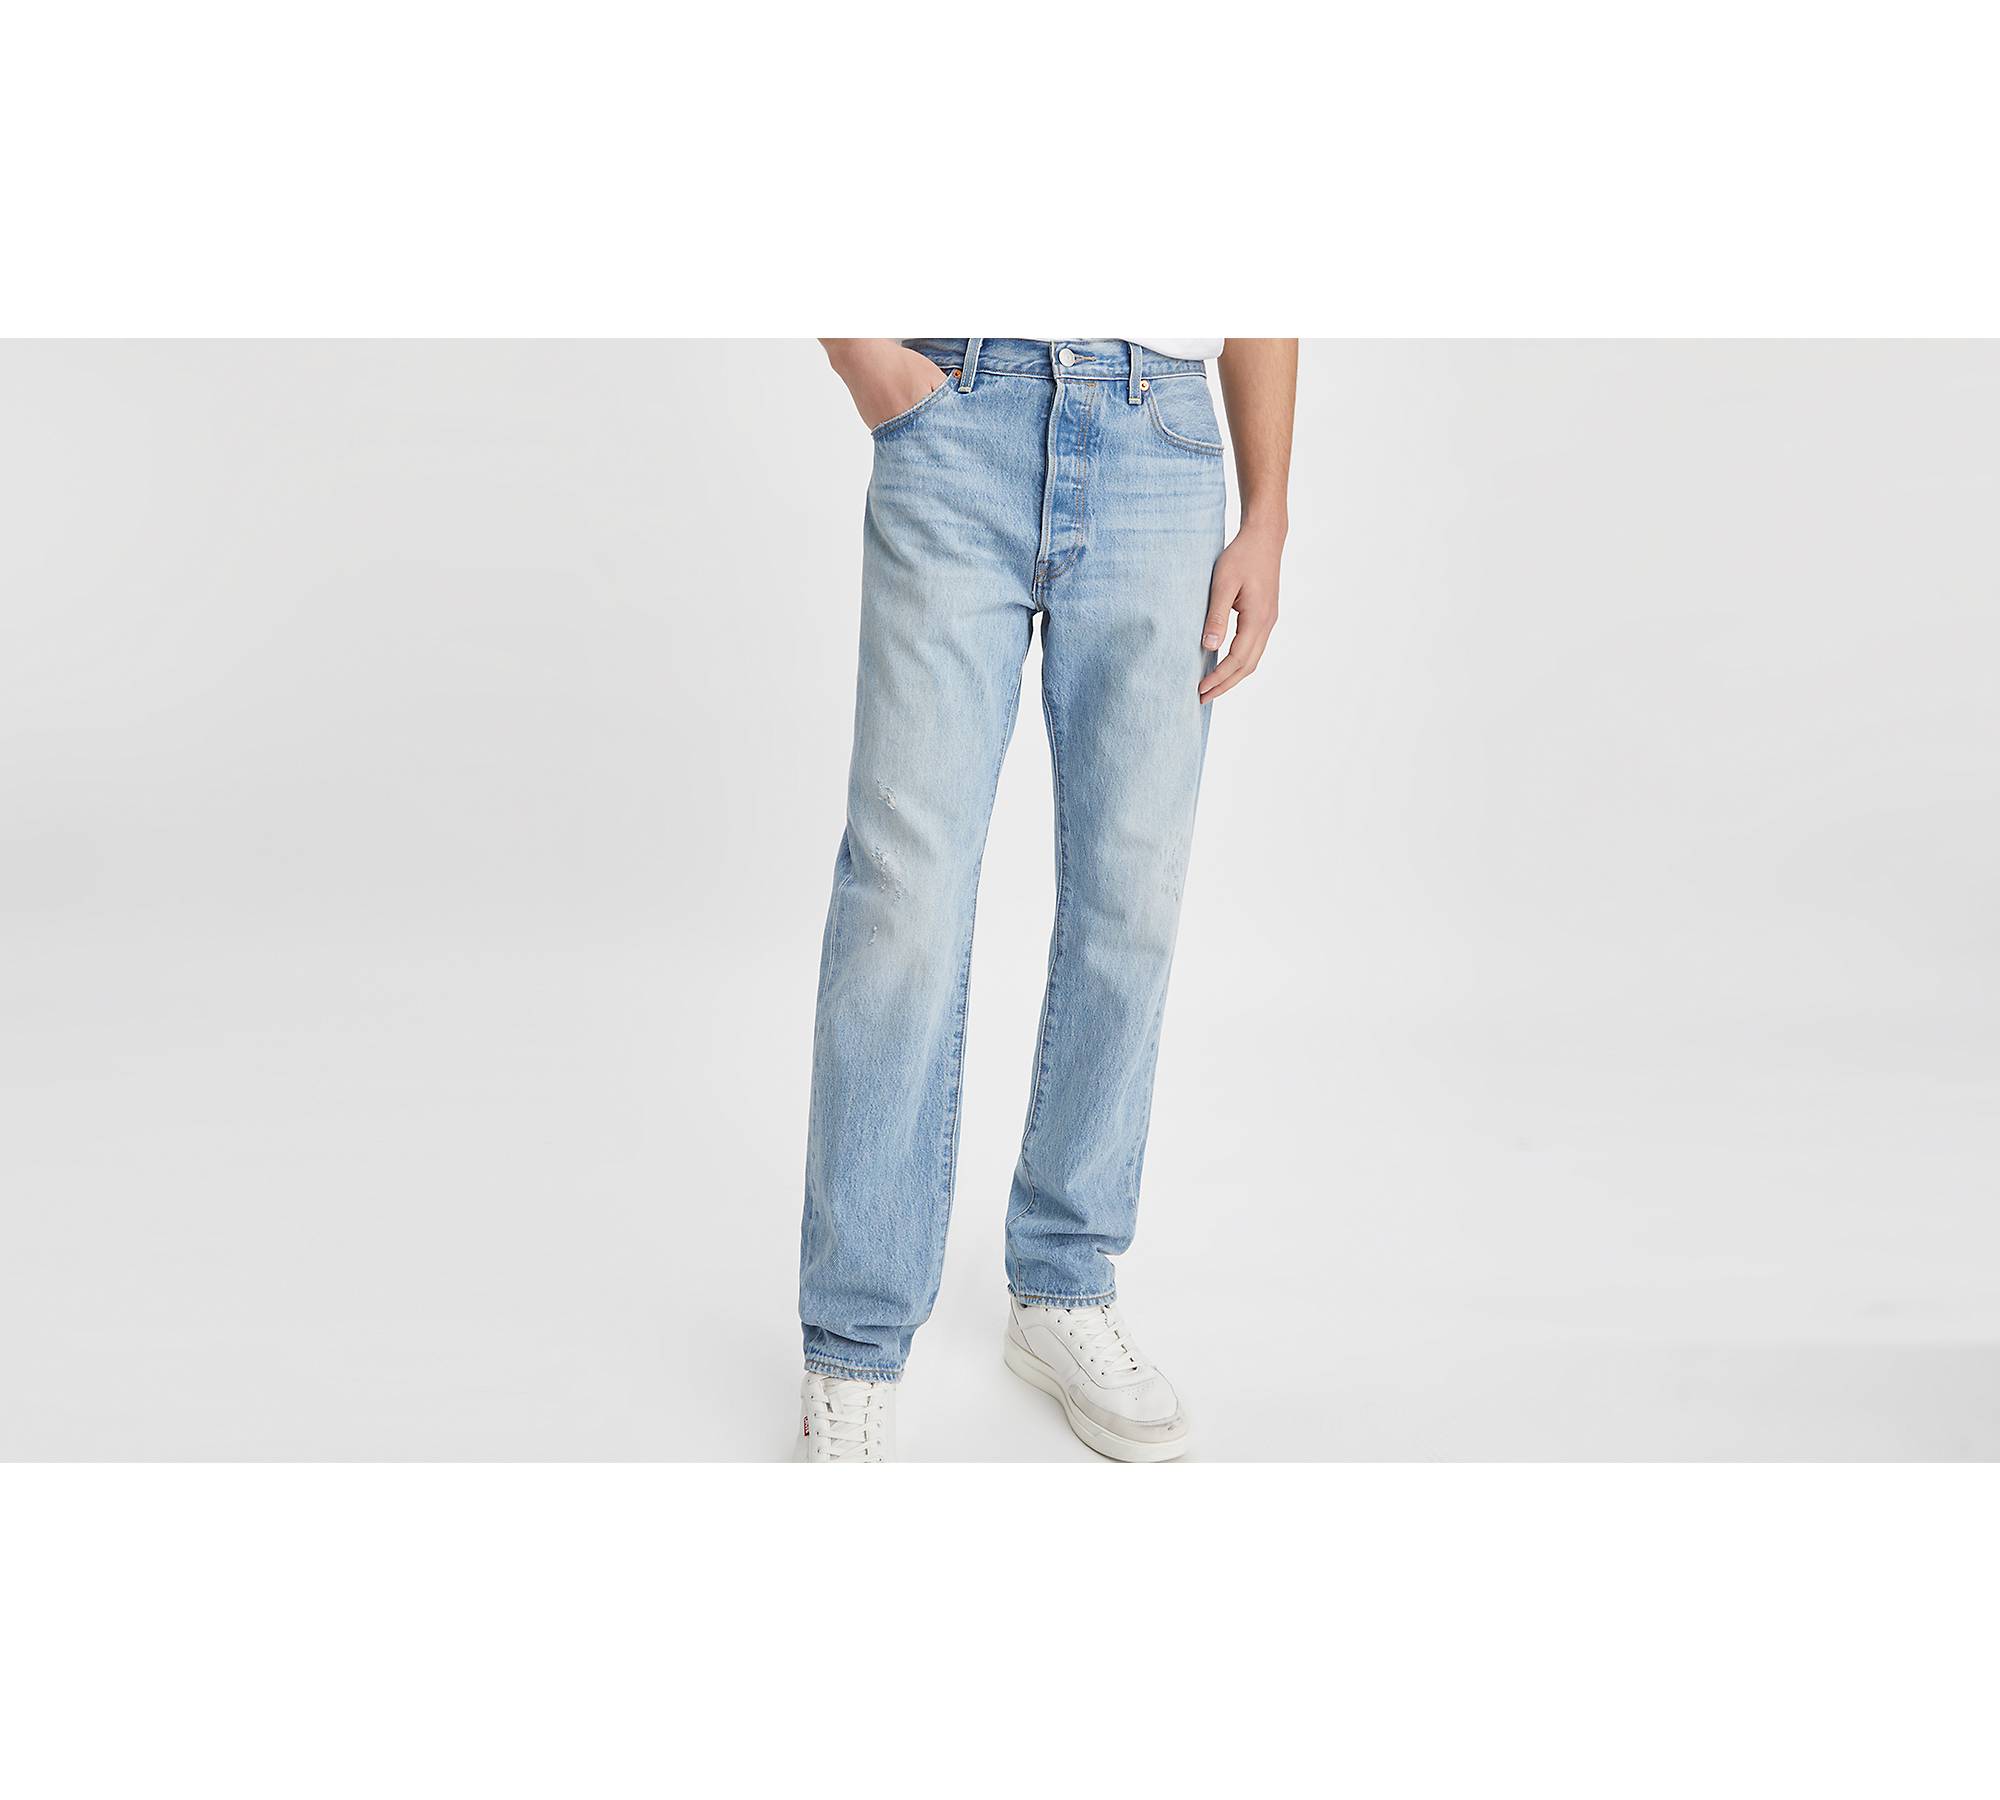 LEVIS - Men's vintage 501 '54 jeans - Light blue - A467700060